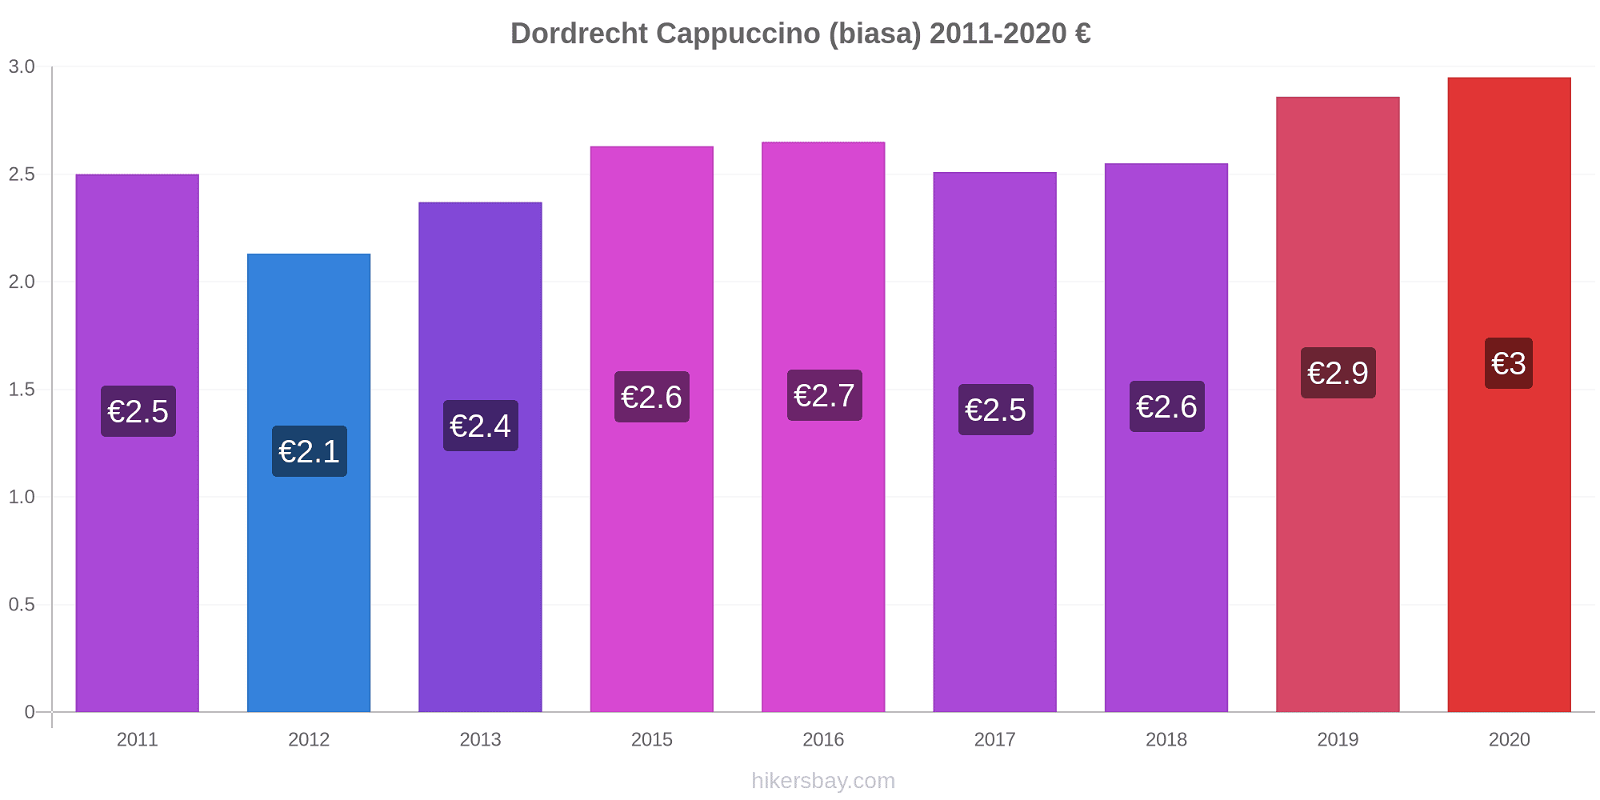 Dordrecht perubahan harga Cappuccino (biasa) hikersbay.com